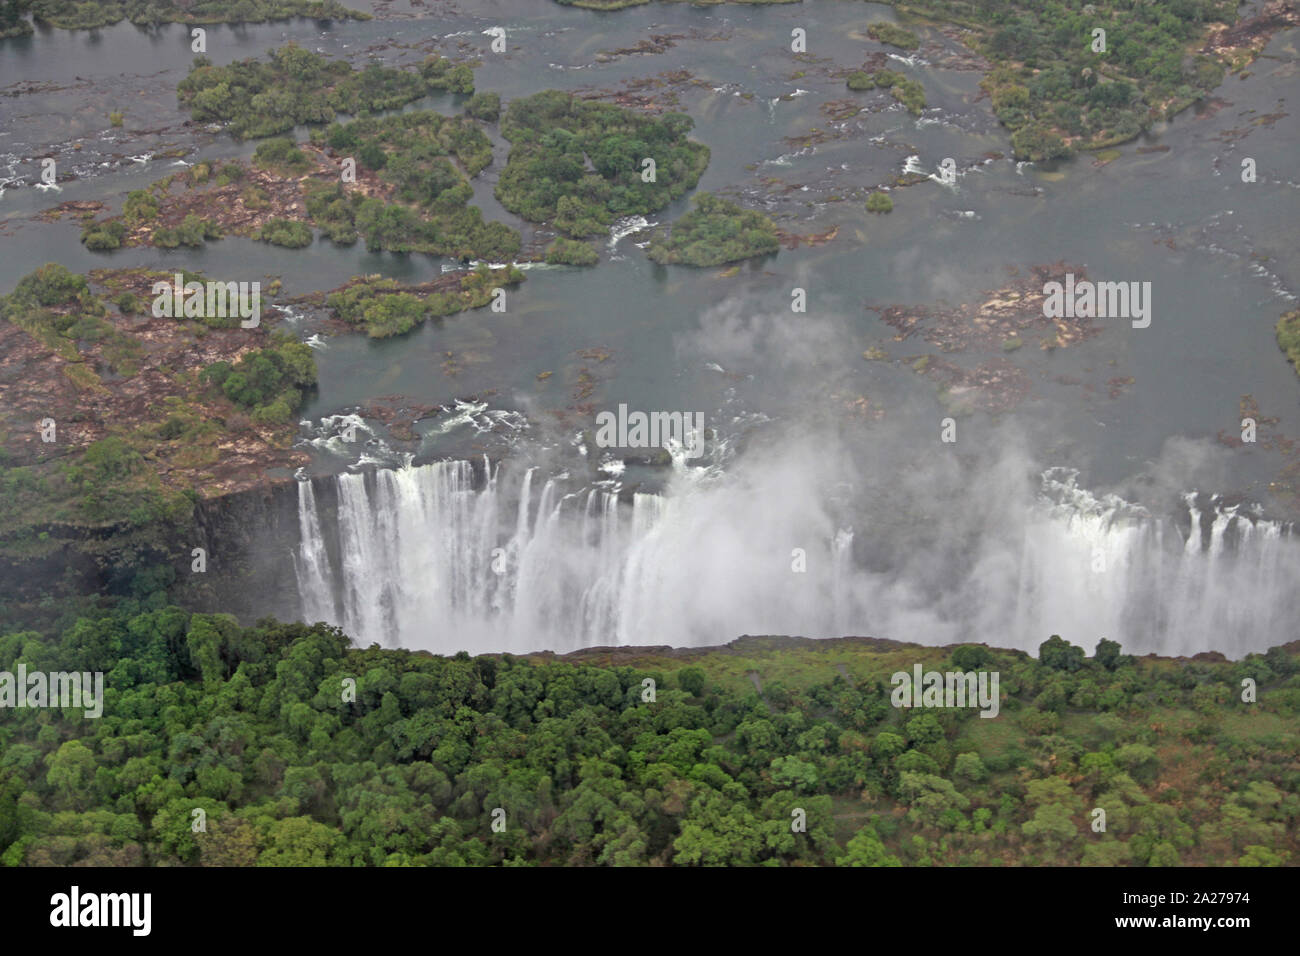 Aerial view of Victoria Falls from the Zimbabwean side, Zambezi River, Zimbabwe/Zambia border. Stock Photo